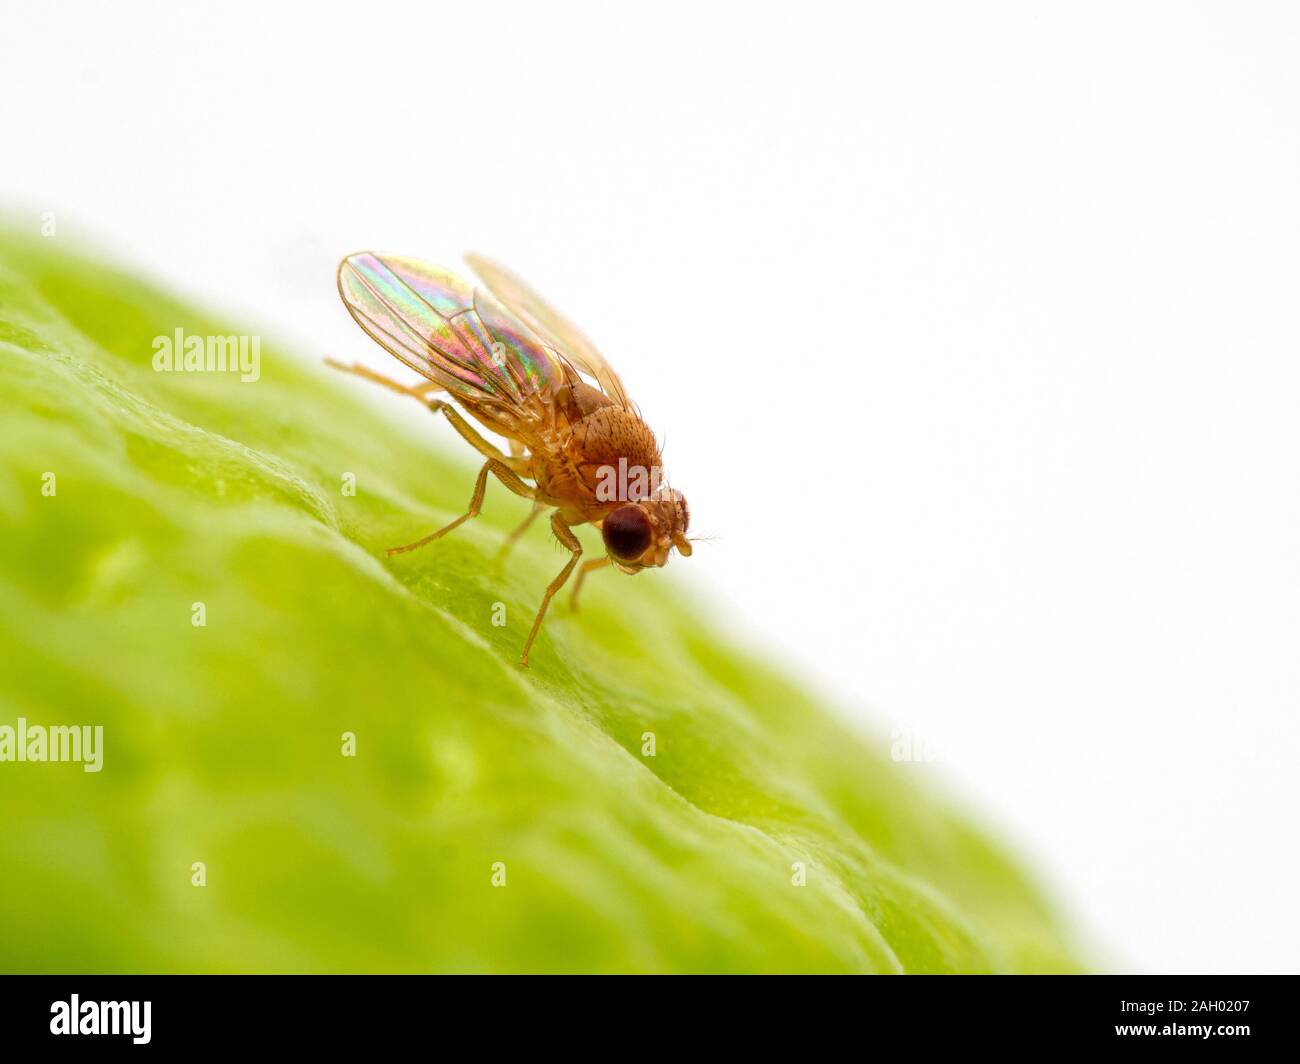 Drosophila hydei, mouches des fruits, en appui sur la surface d'une lime tout en nettoyant son visage. C'est une plus grande espèce de mouche à fruit Drosophila Banque D'Images